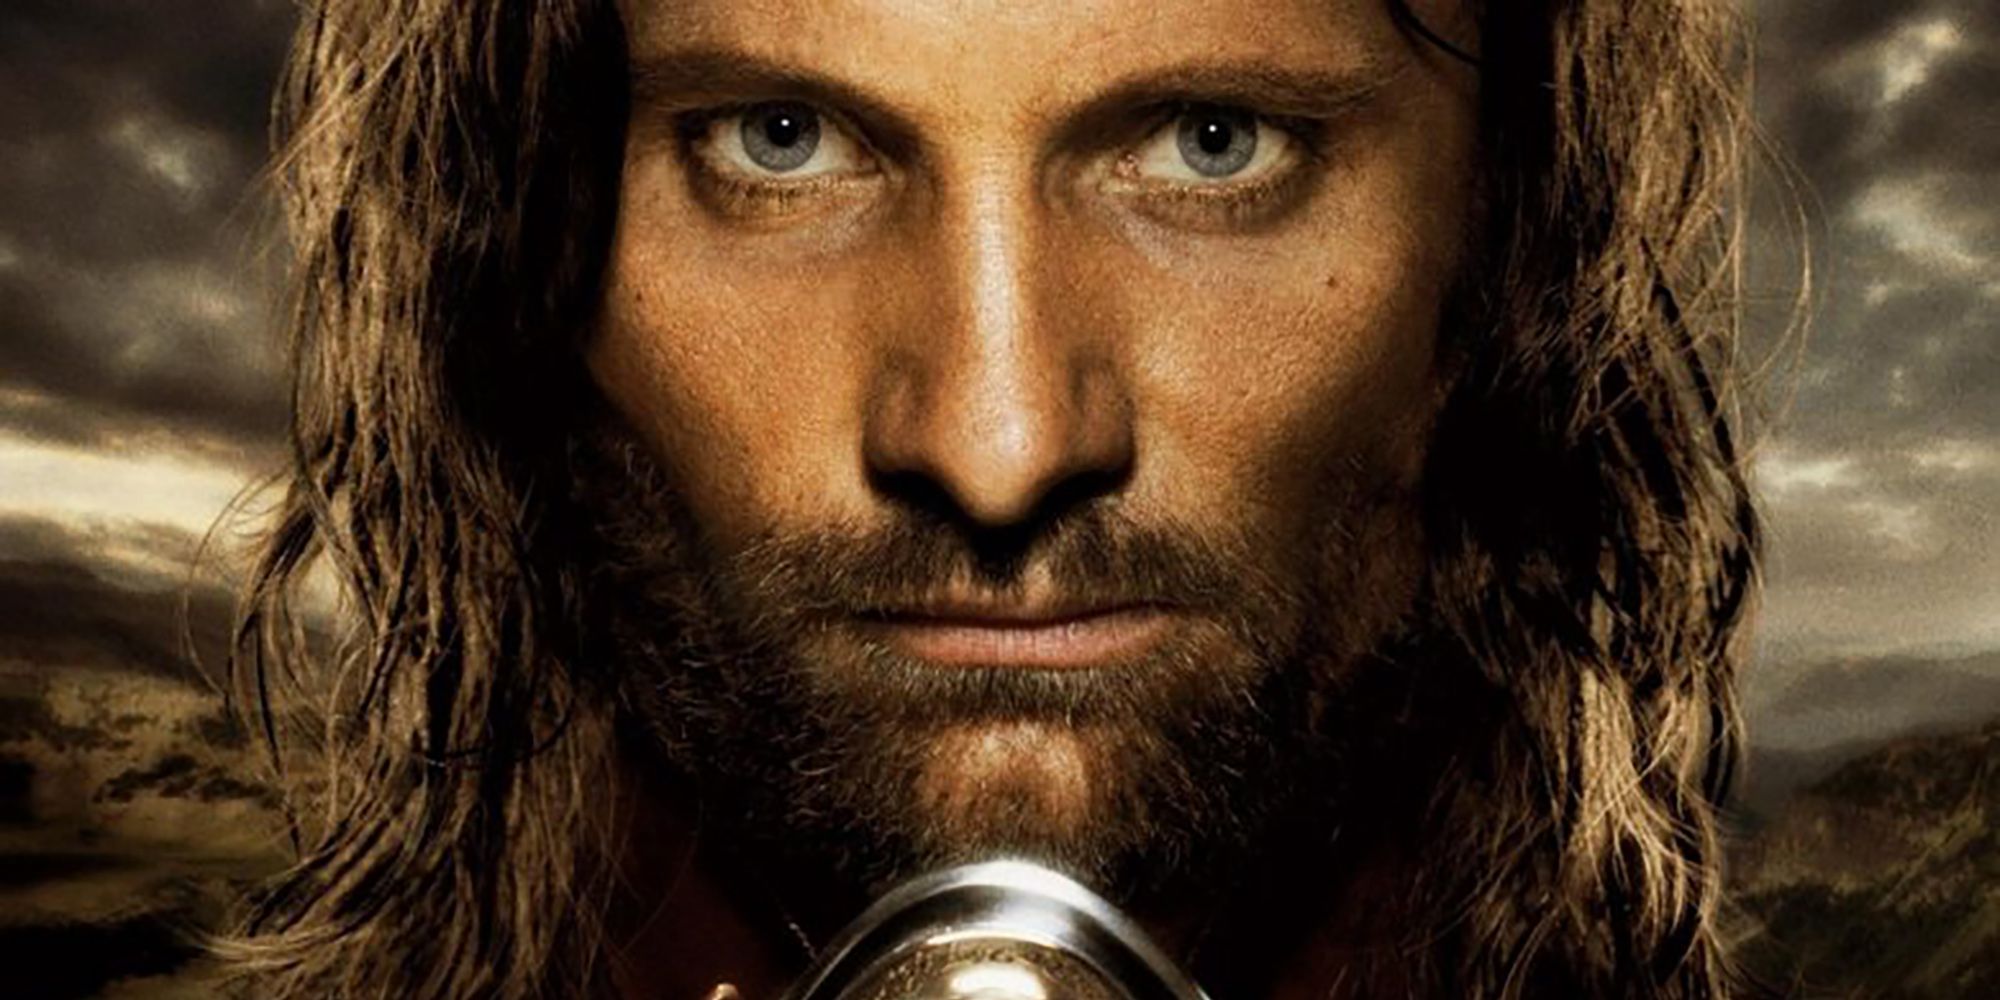 Aragorn en El señor de los anillos